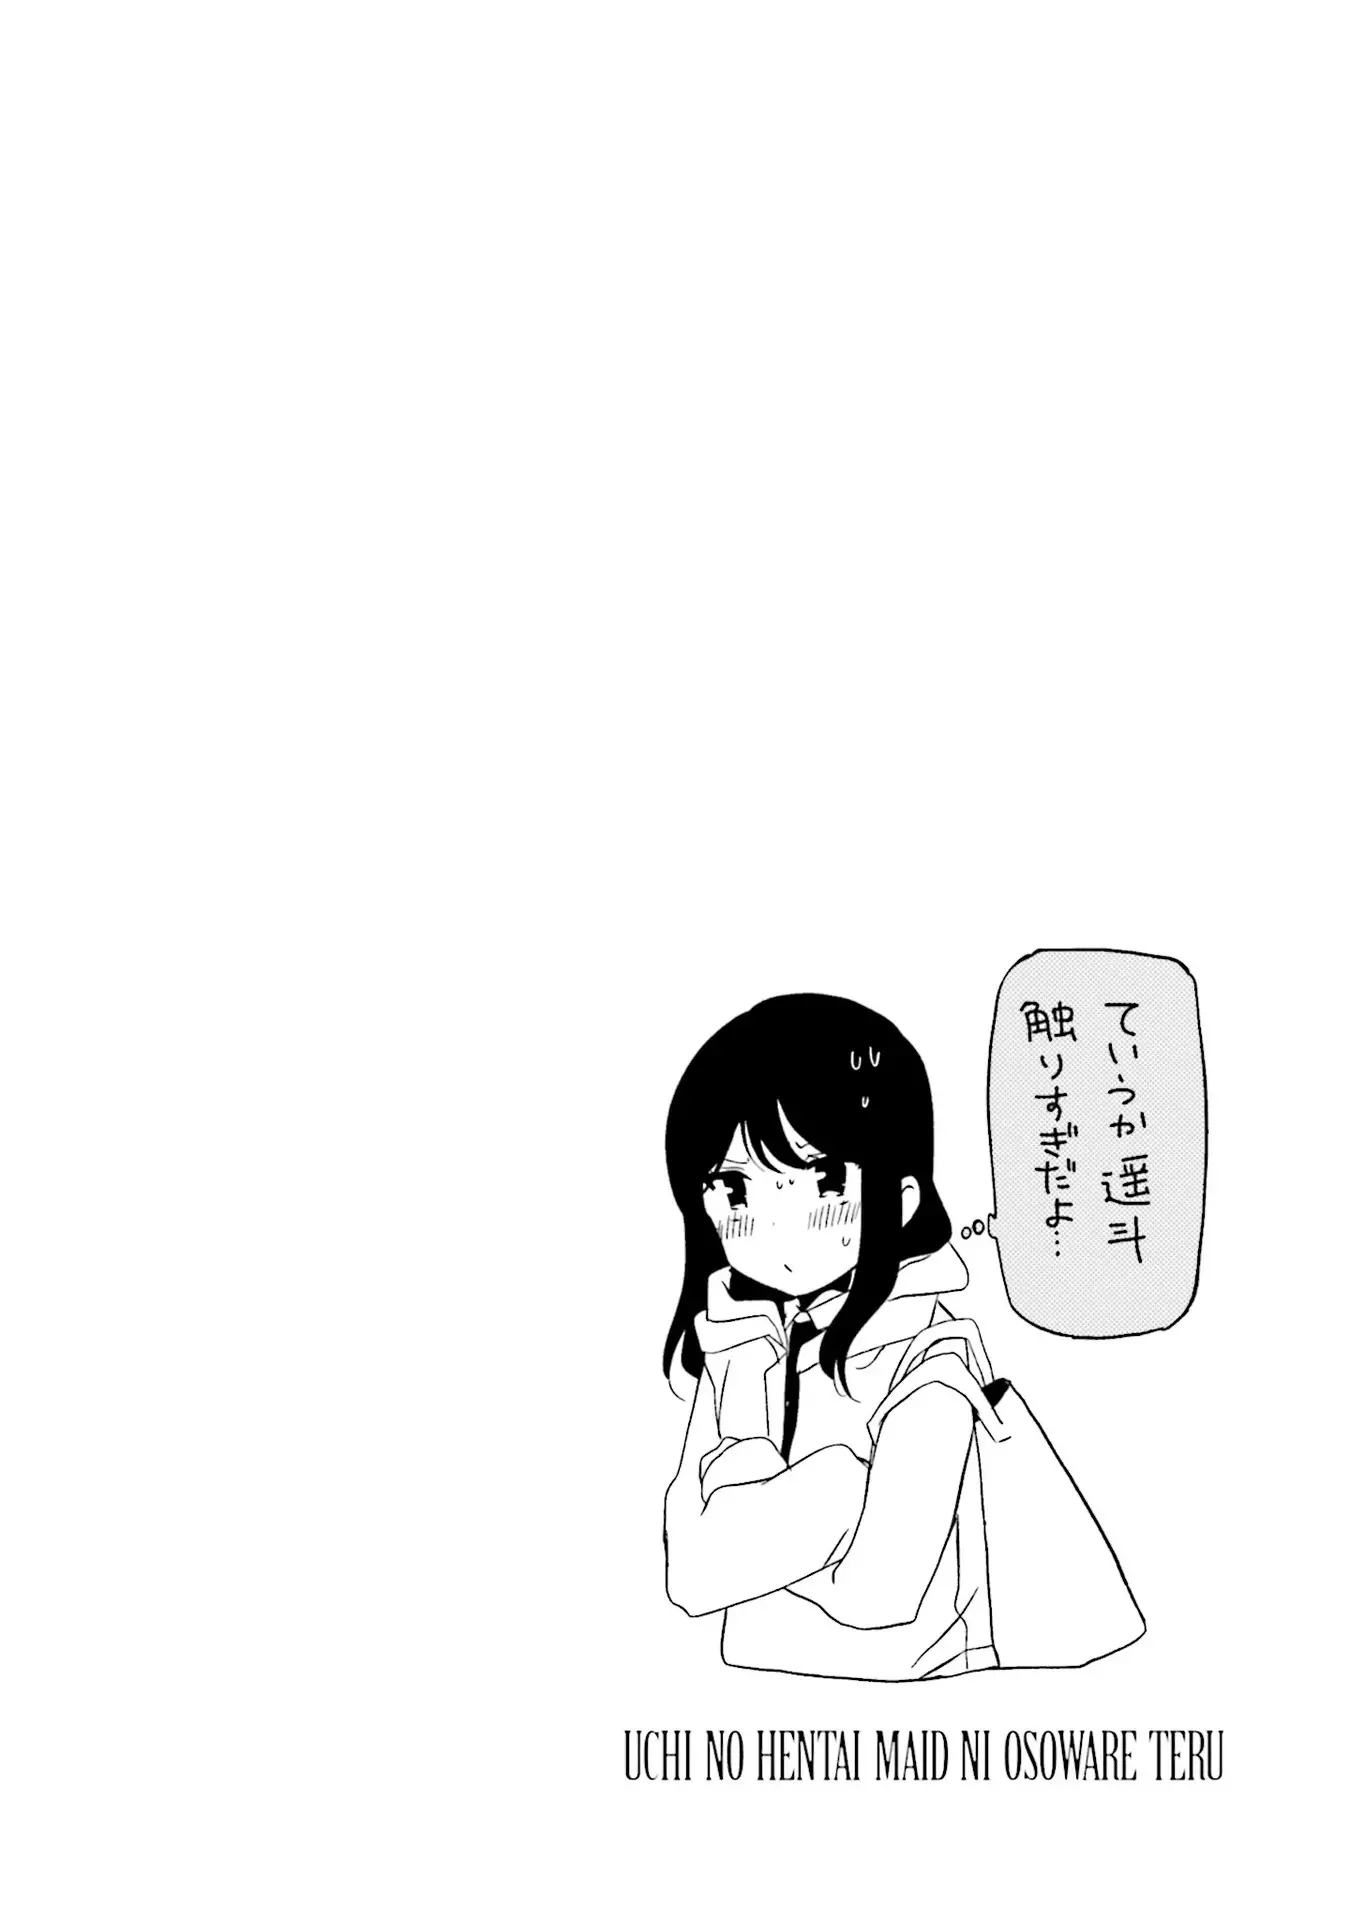 Uchi No Hentai Maid Ni Osowareteru - 65 page 9-8b35edf8